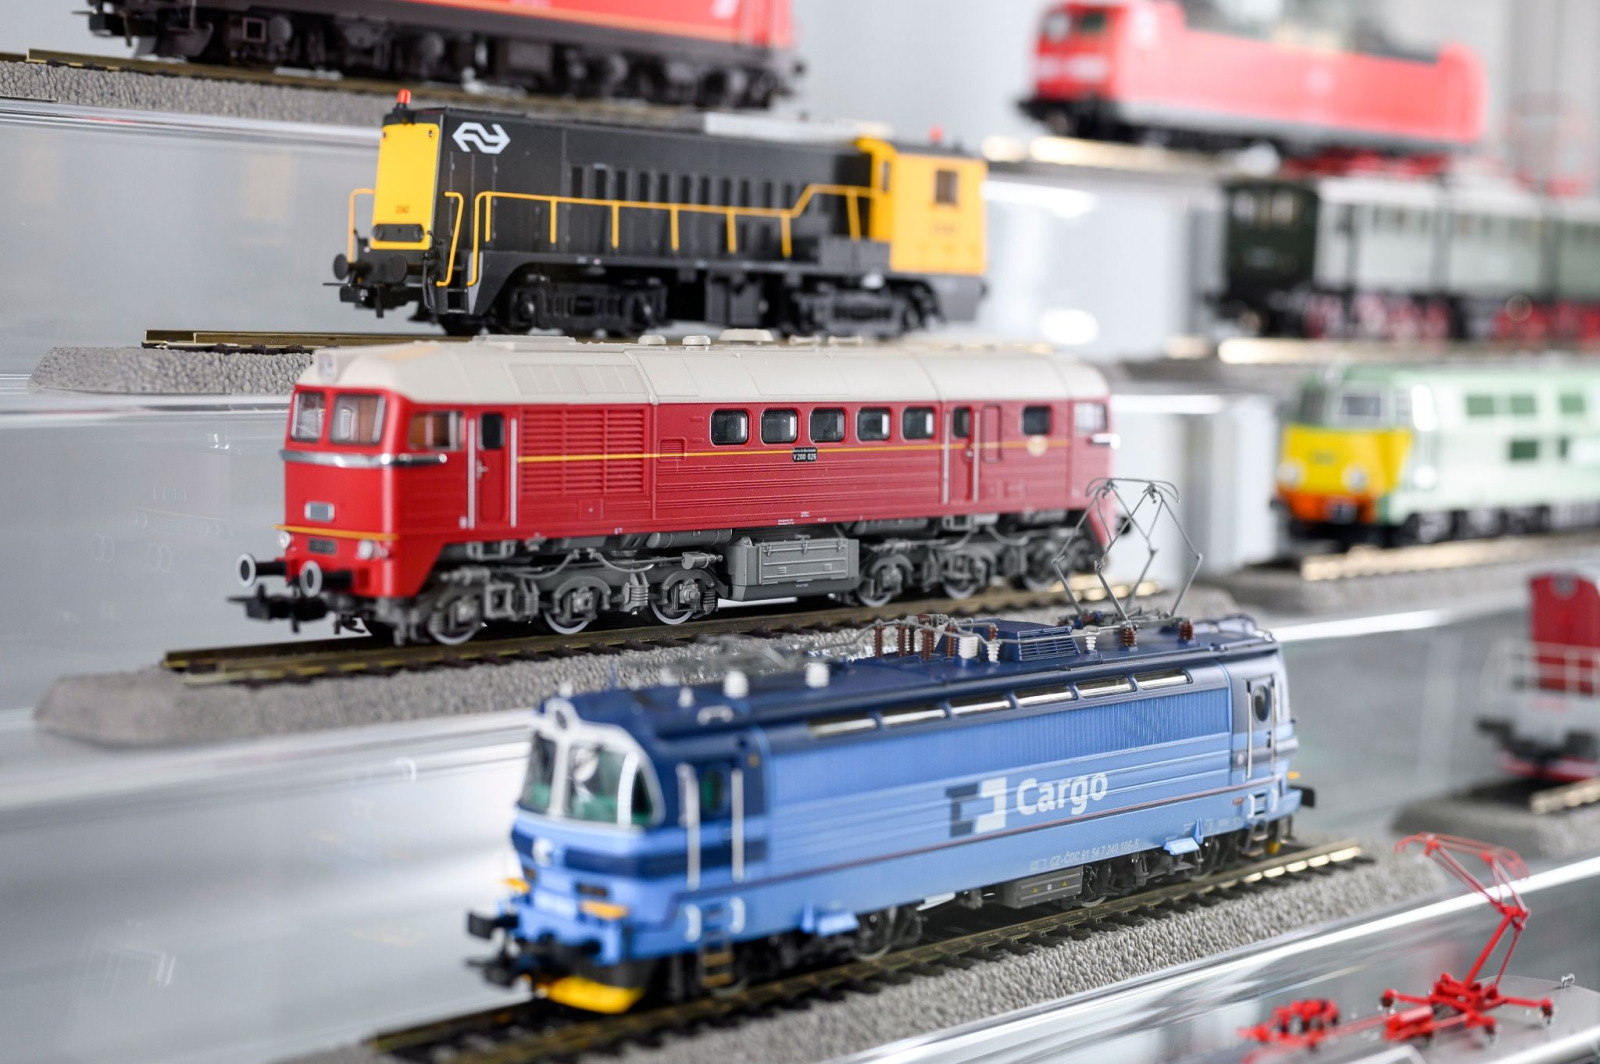 Verschiedene Eisenbahn-Modelle der Firma Piko stehen am Rande einer Pressekonferenz in einer Vitrine.